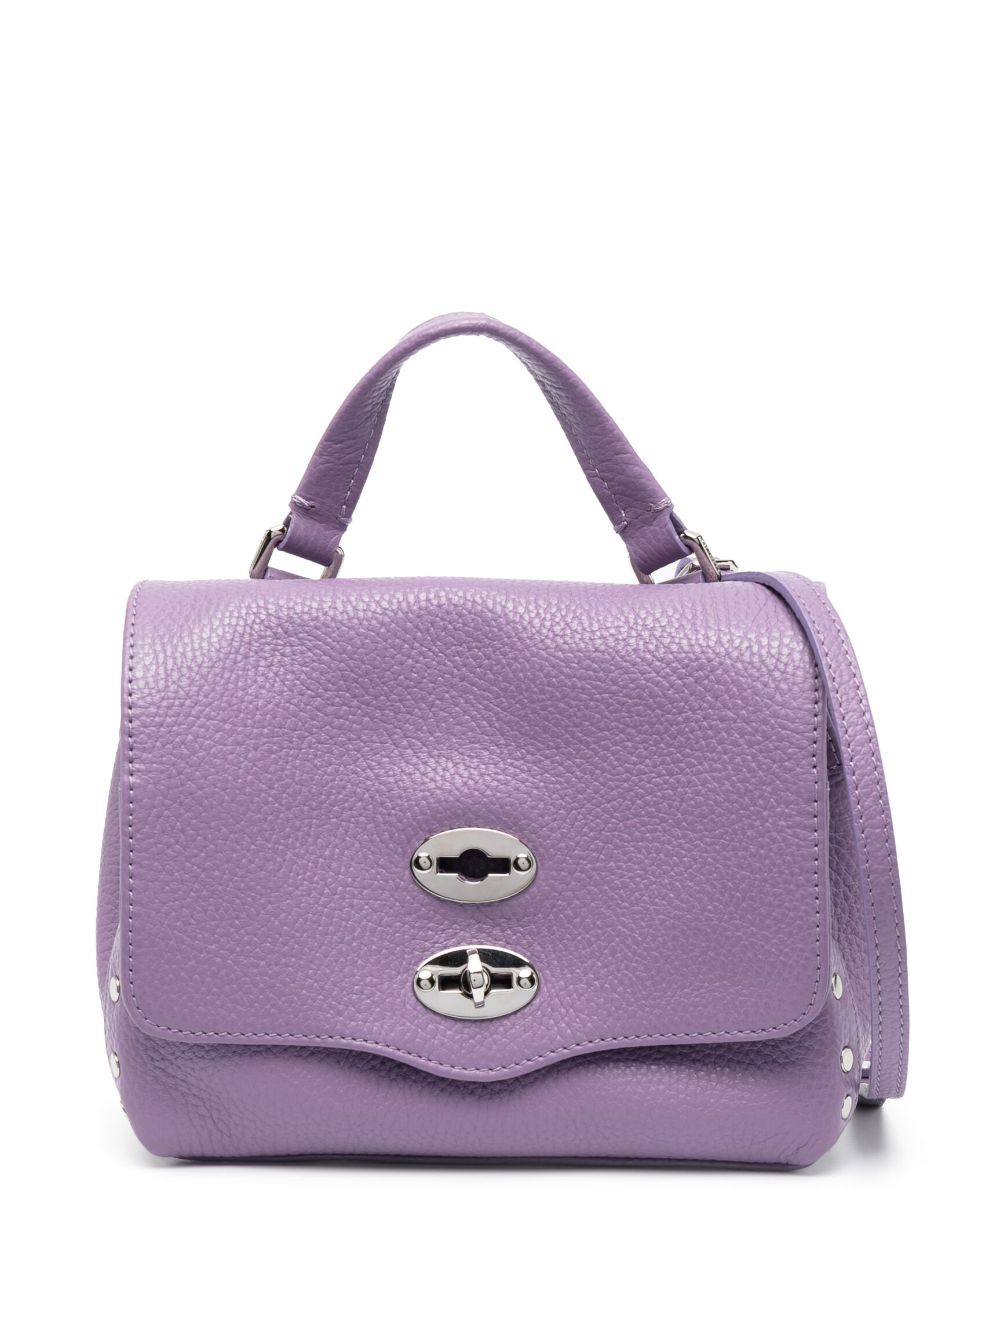 Zanellato baby Postina leather tote bag - Purple von Zanellato